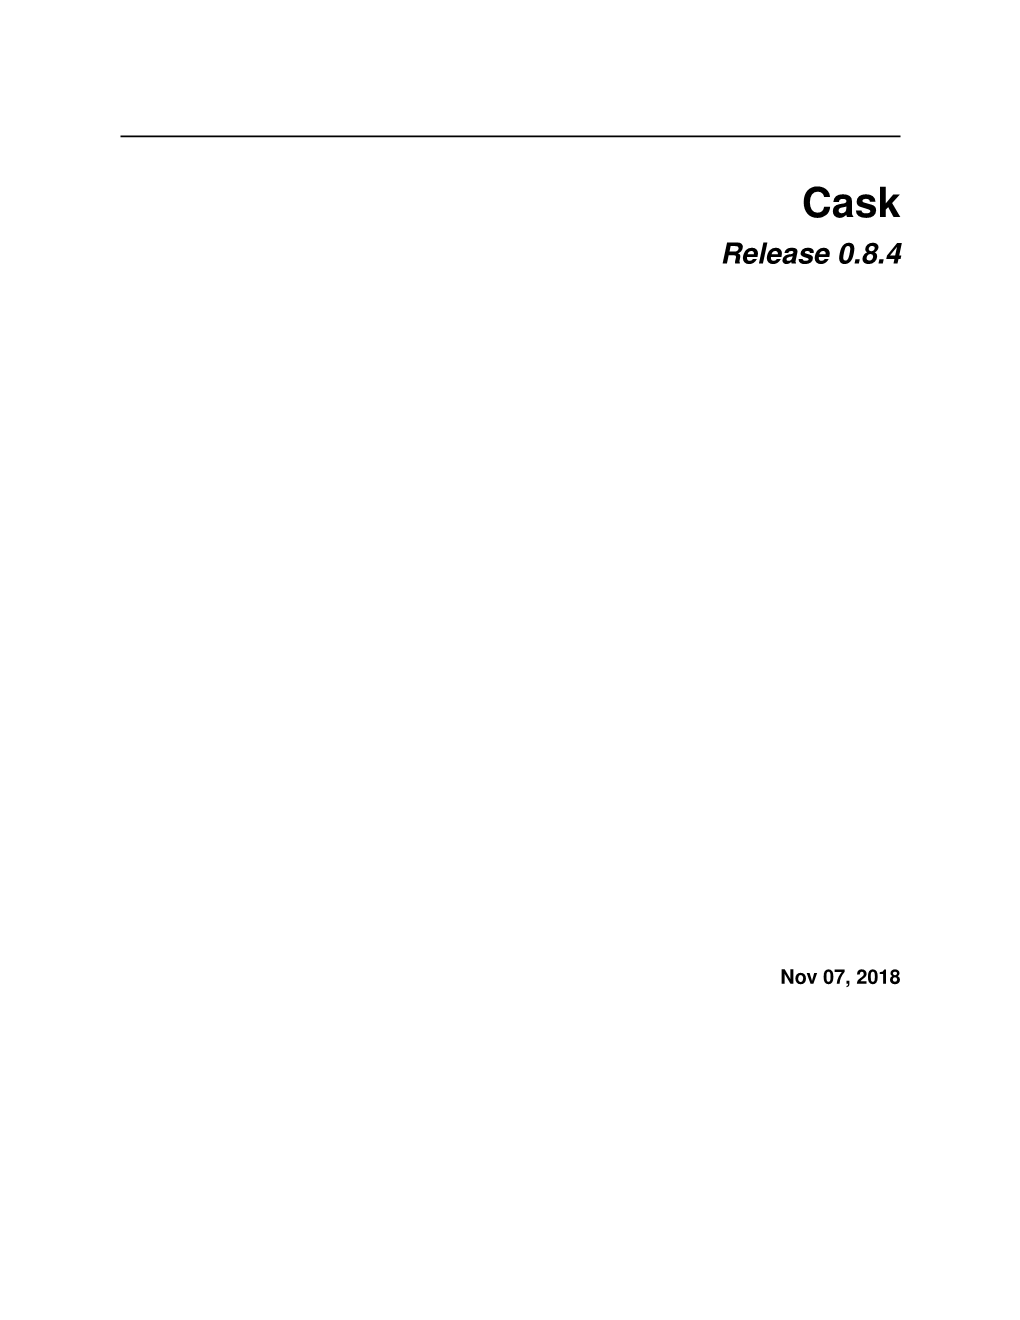 Cask Release 0.8.4